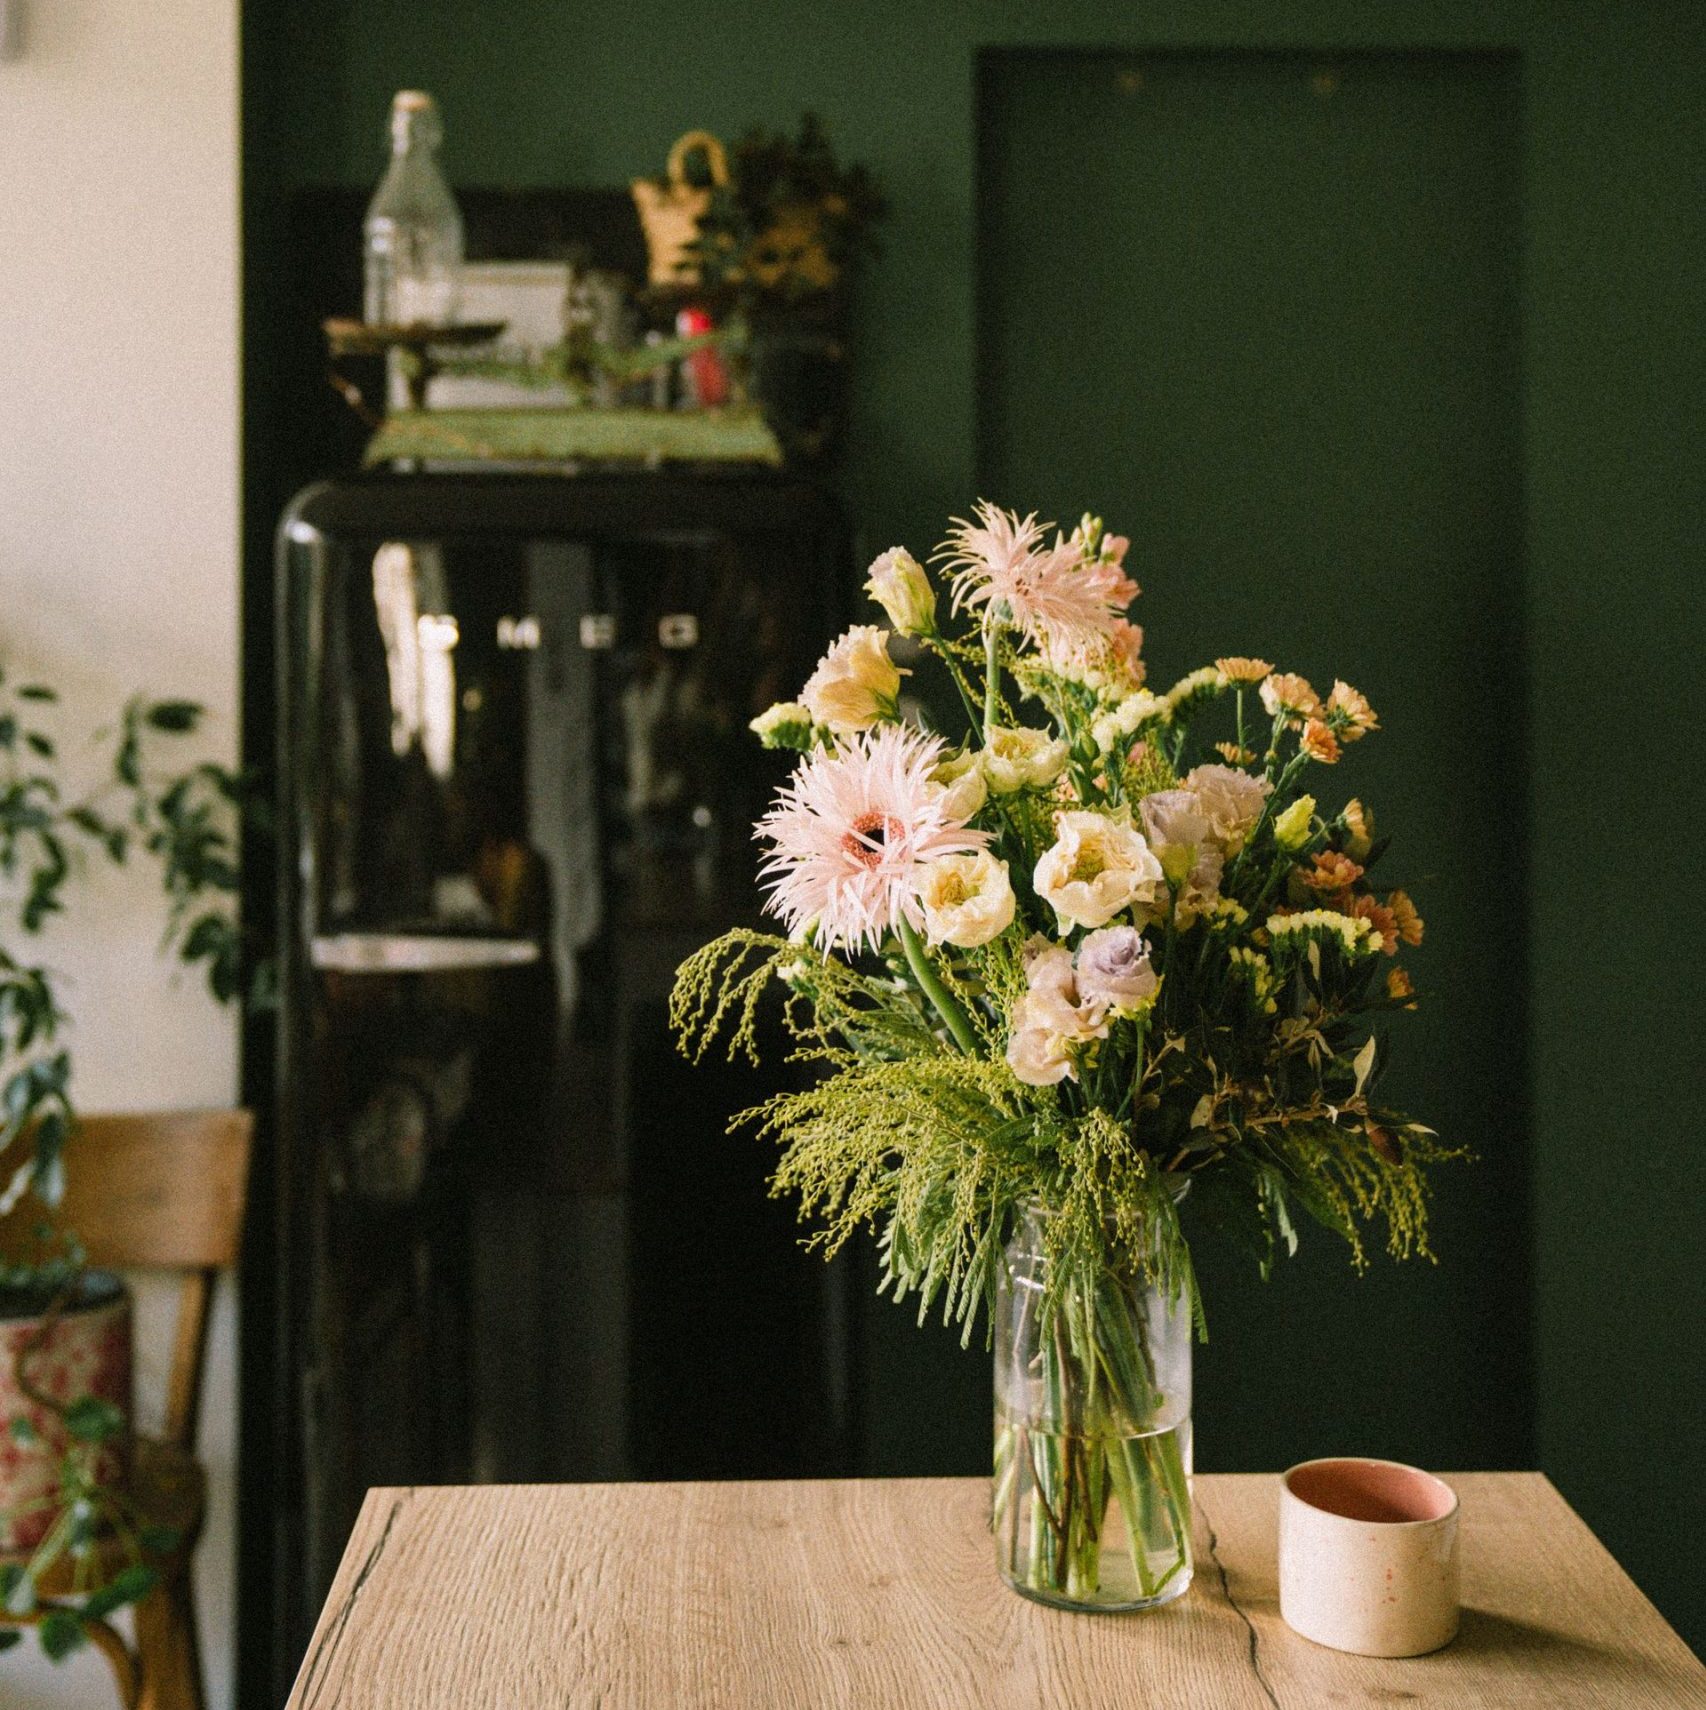 atelieraimer-livraison-bouquet-nantes-fleurs-francaises-abonnement